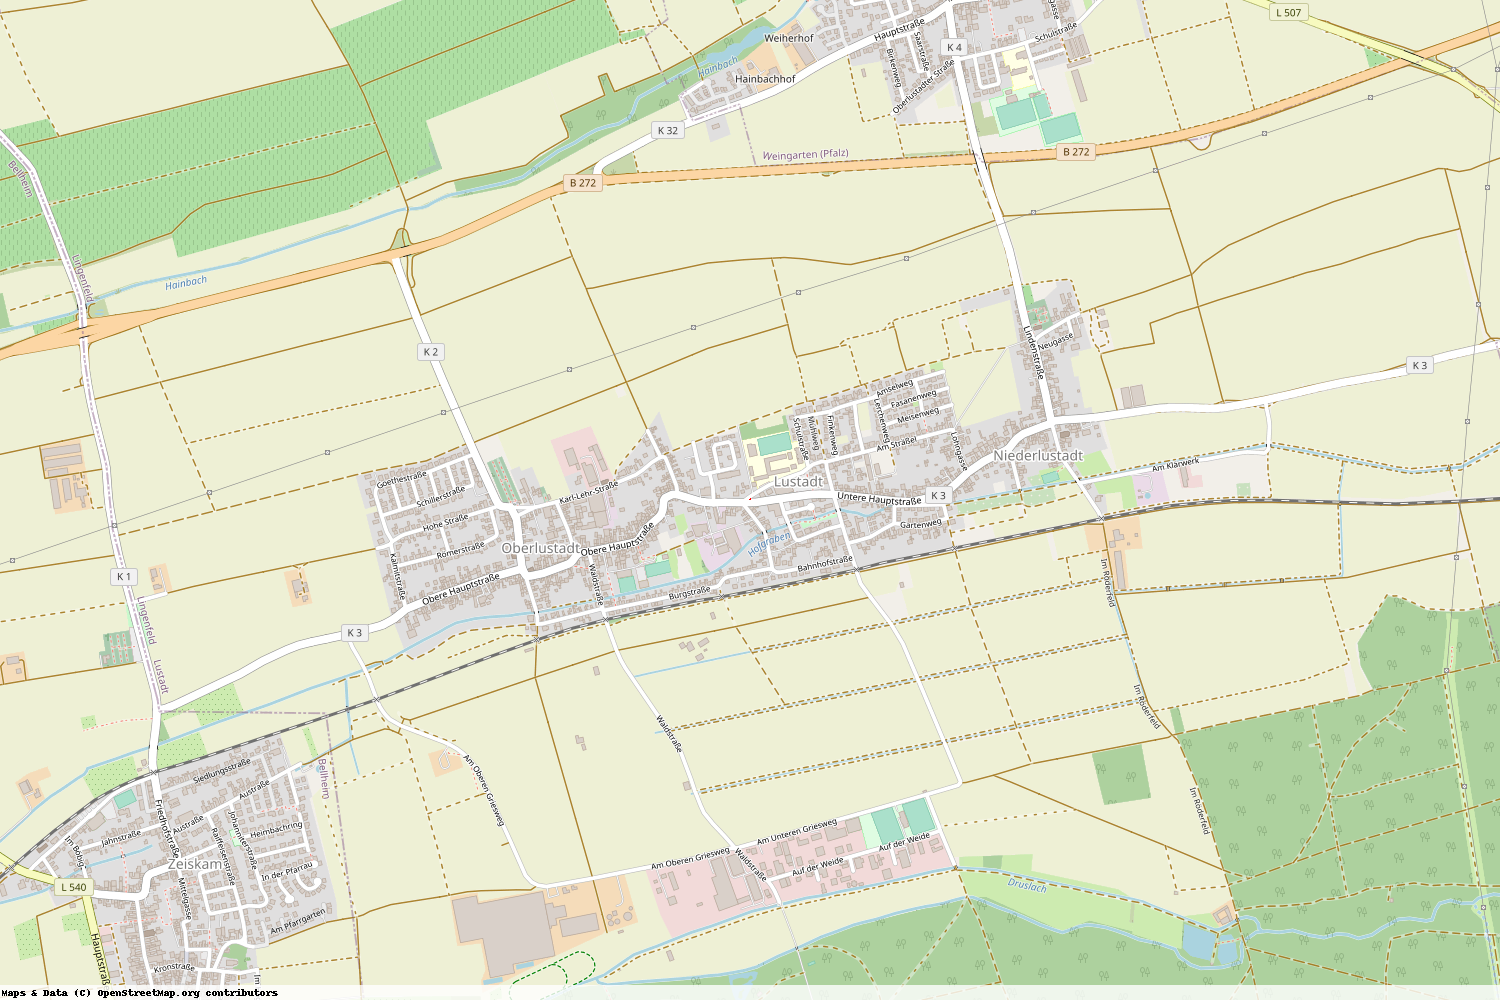 Ist gerade Stromausfall in Rheinland-Pfalz - Germersheim - Lustadt?